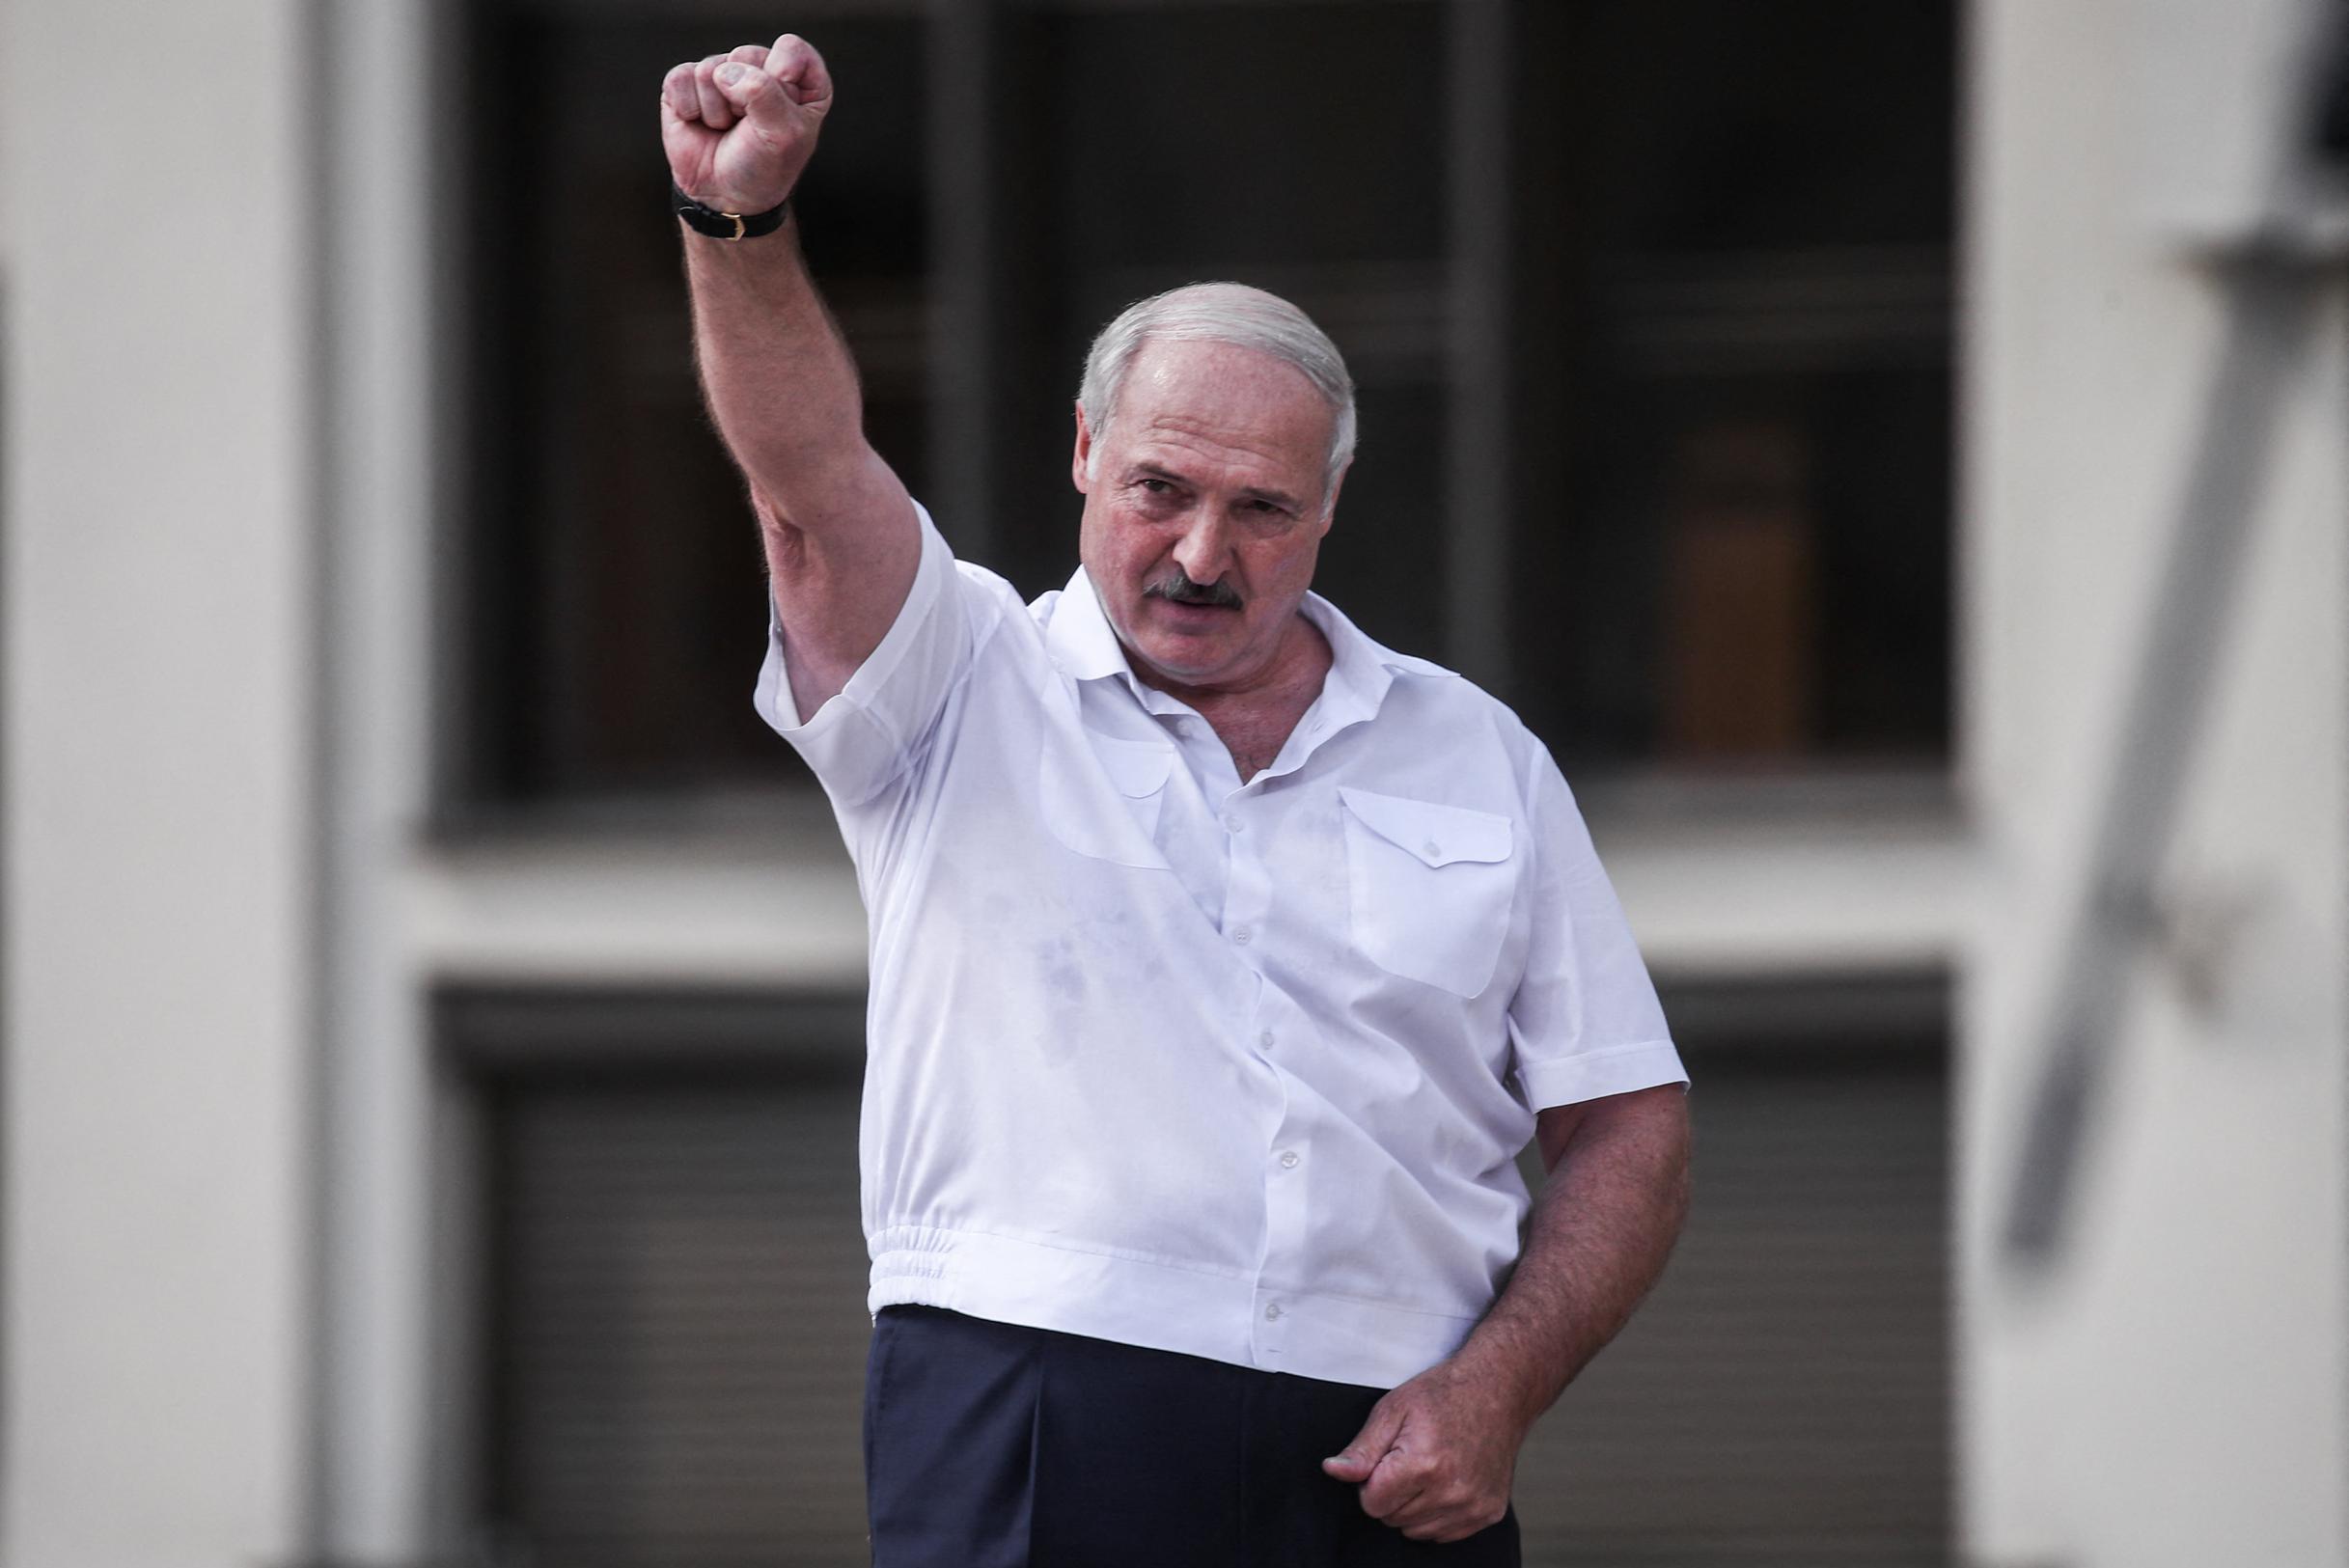 Il presidente bielorusso Lukashenko accusa l’Ucraina di lanciare attacchi missilistici e minaccia di attaccare i “centri decisionali” nei paesi occidentali